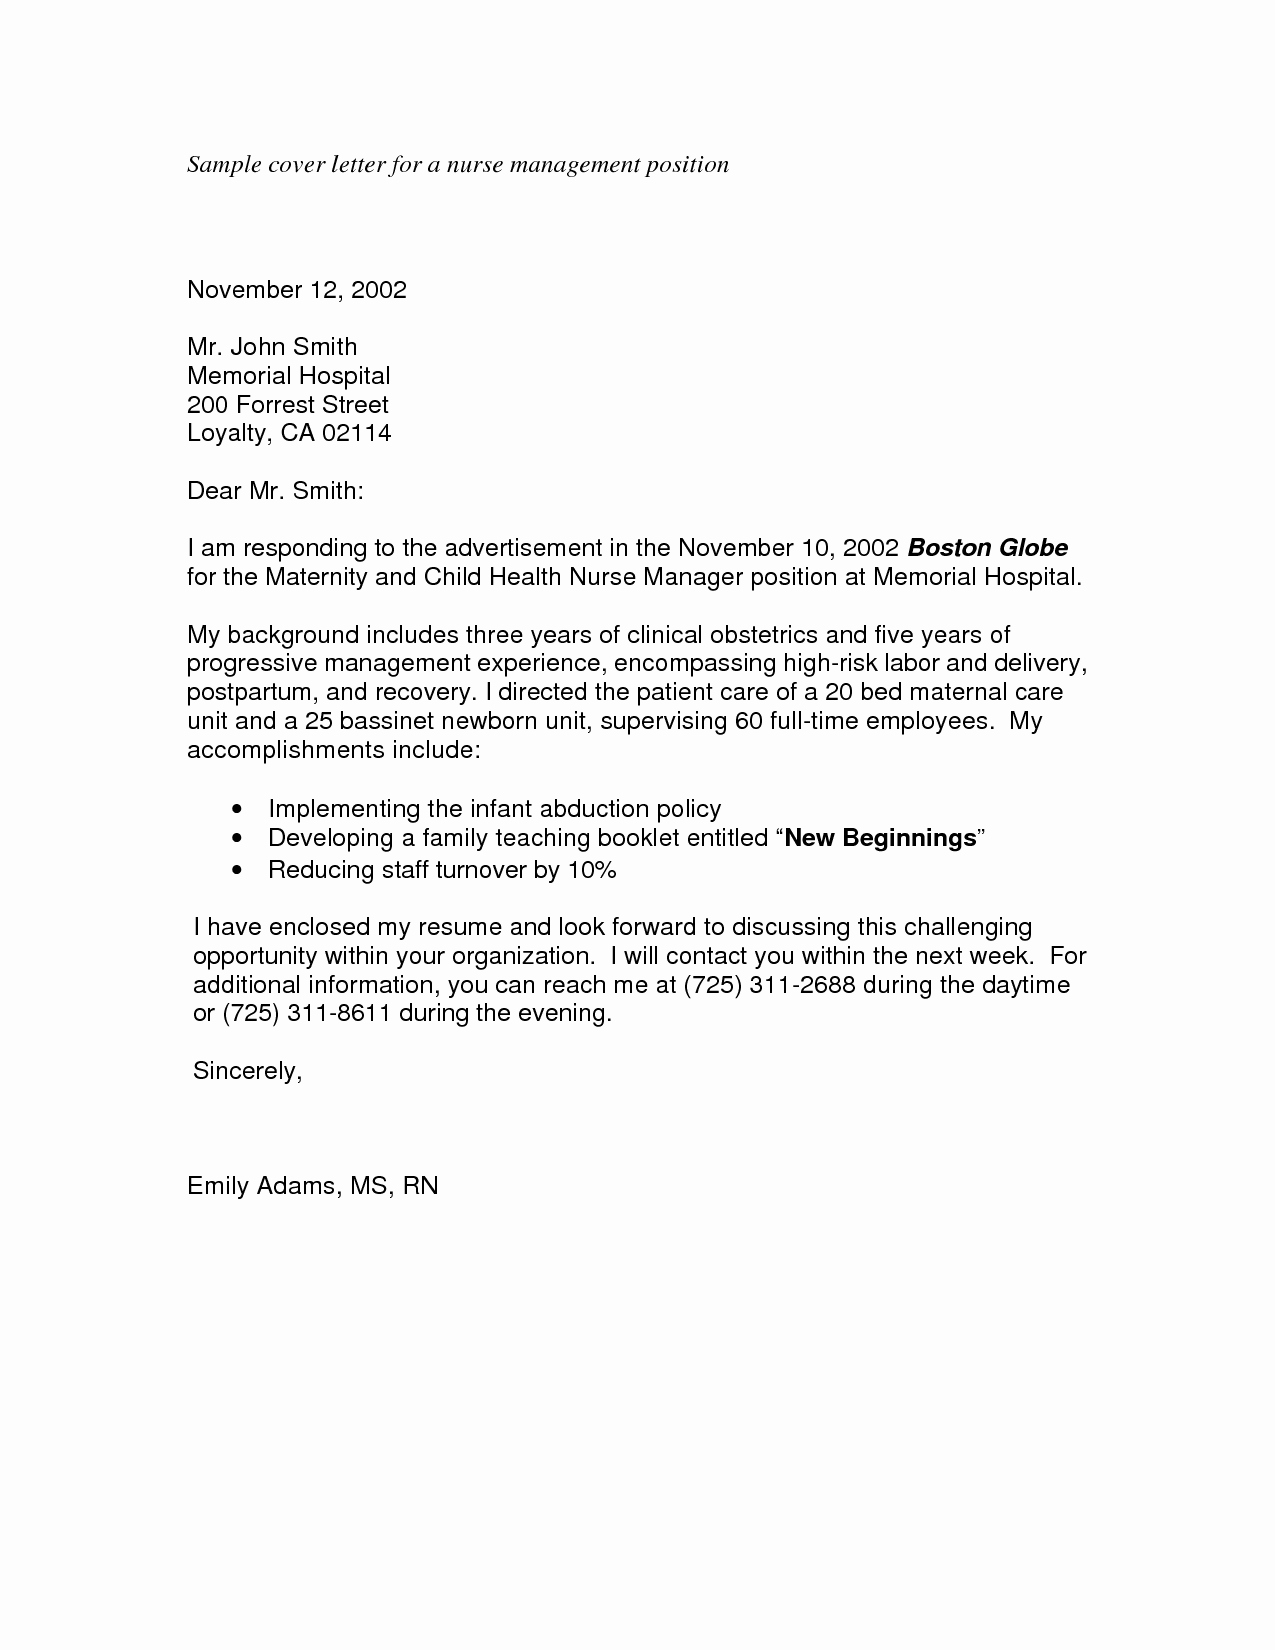 Sample Cover Letter for Applying A Job